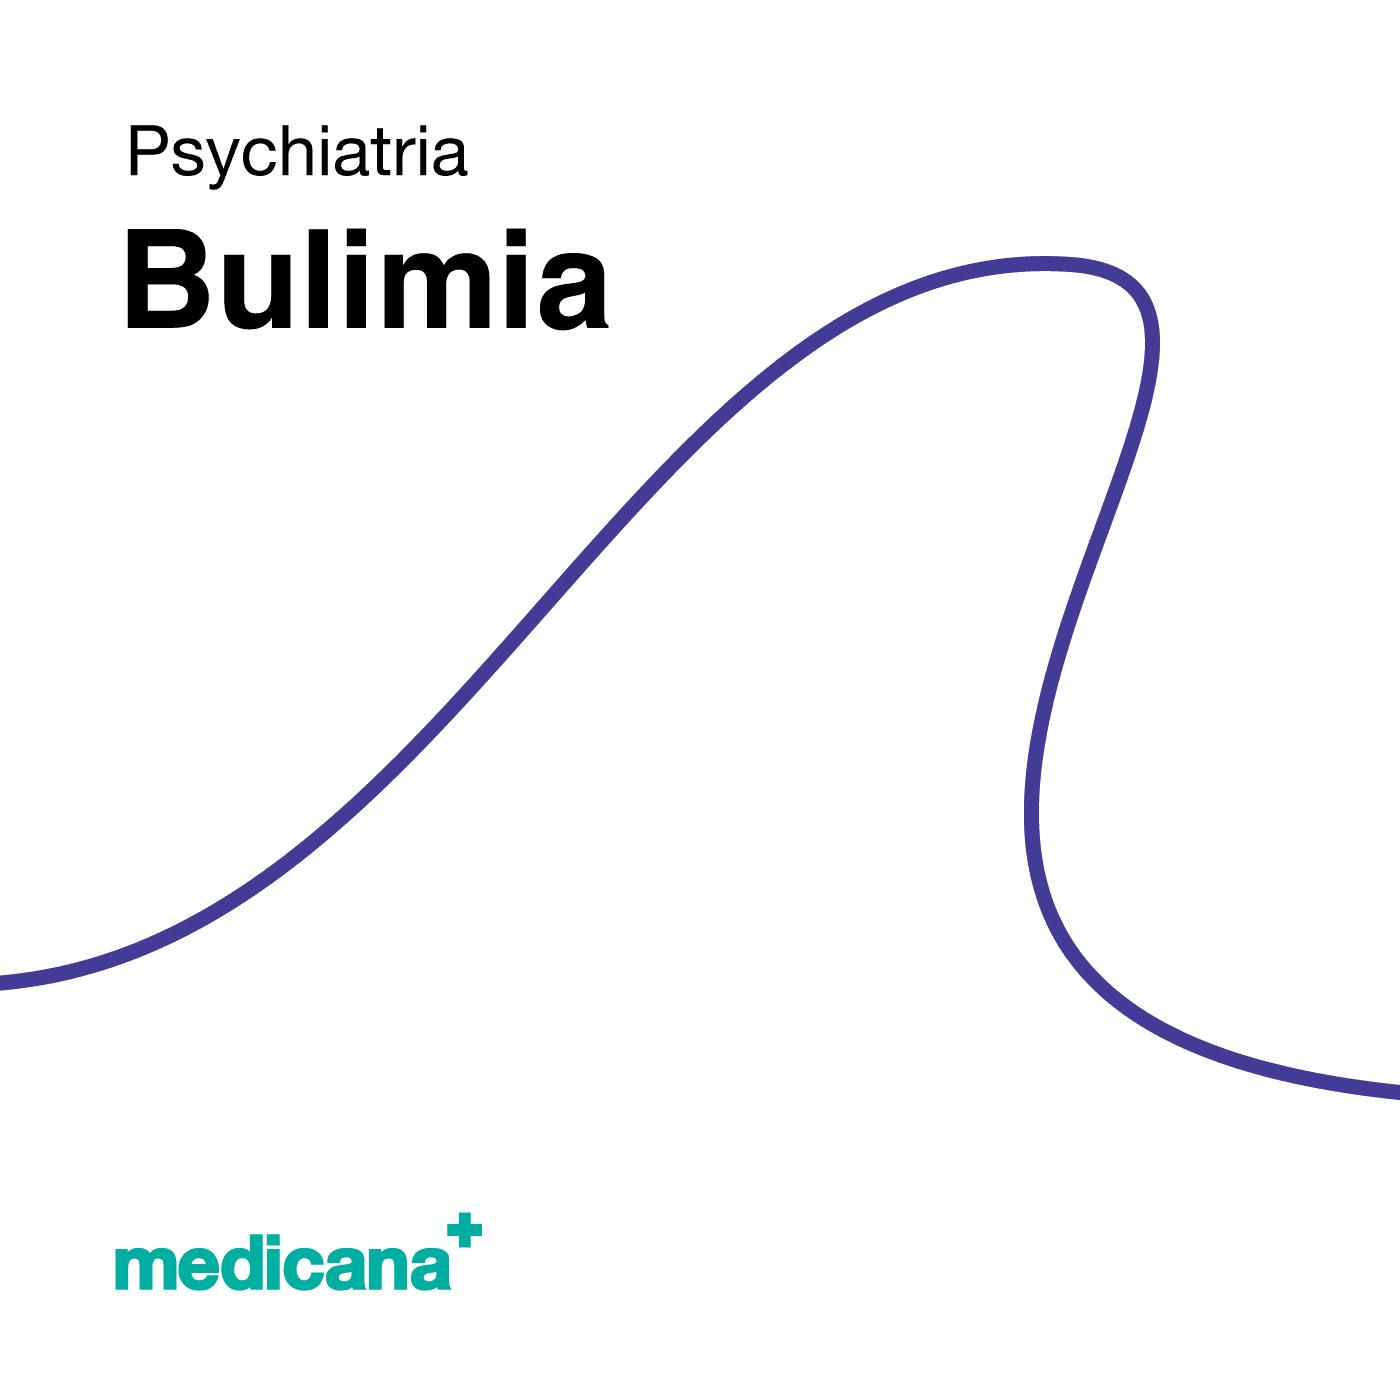 Grafika, białe tło z granatową kreską, czarnym napisem Psychiatria - Bulimia i logo Medicana Centrum Terapii Medyczna Marihuana w lewym dolnym rogu.